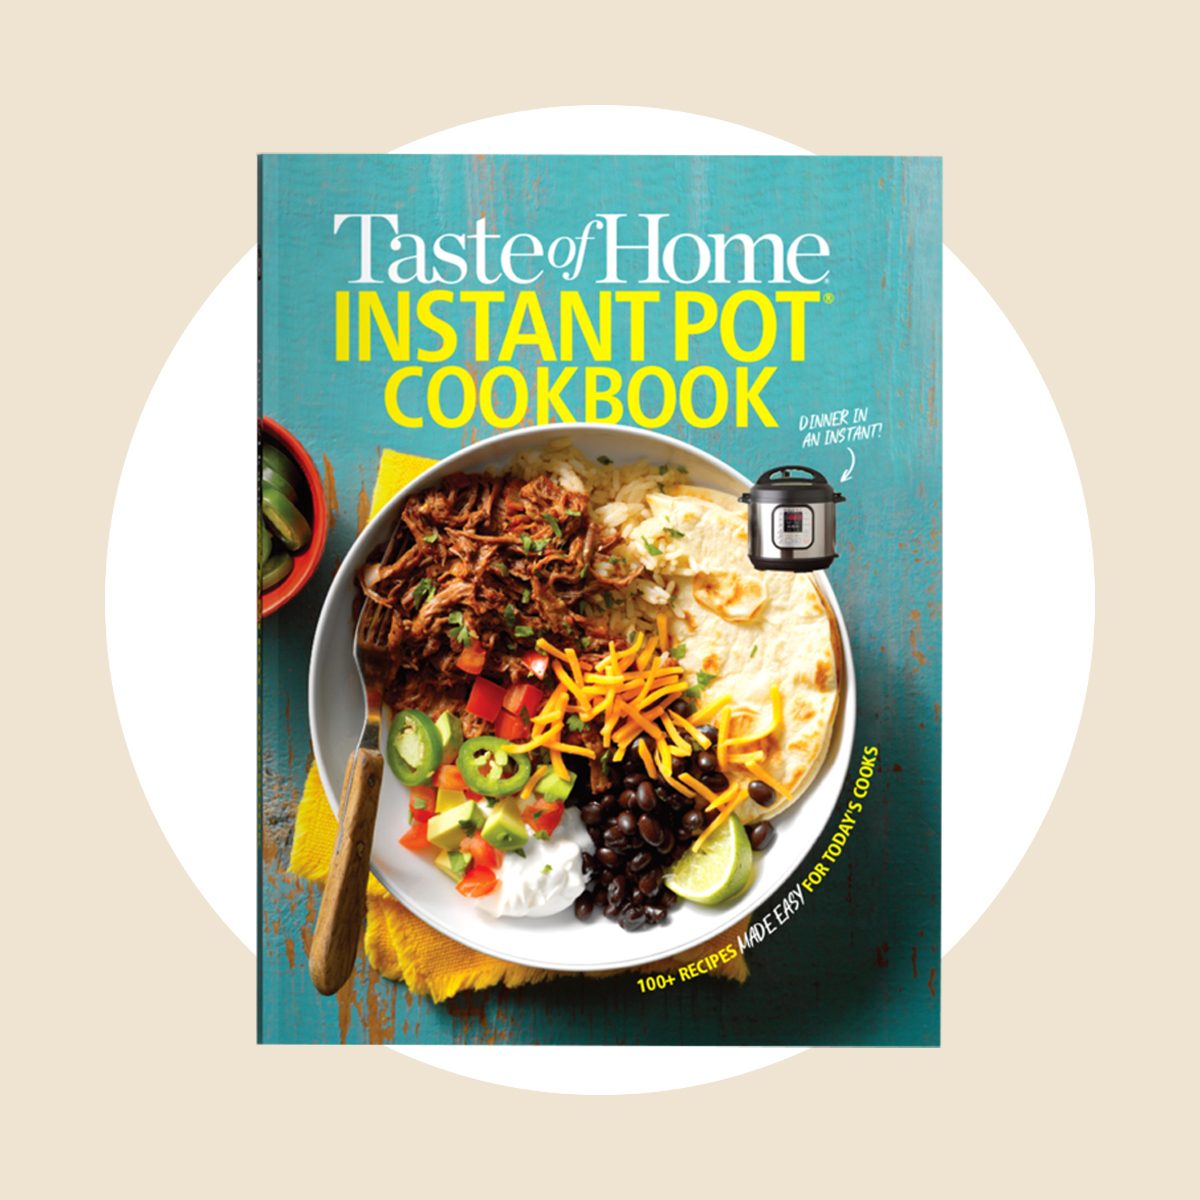 https://www.tasteofhome.com/wp-content/uploads/2020/09/Taste-of-Home-Instant-Pot-Cookbook.jpg?fit=700%2C700